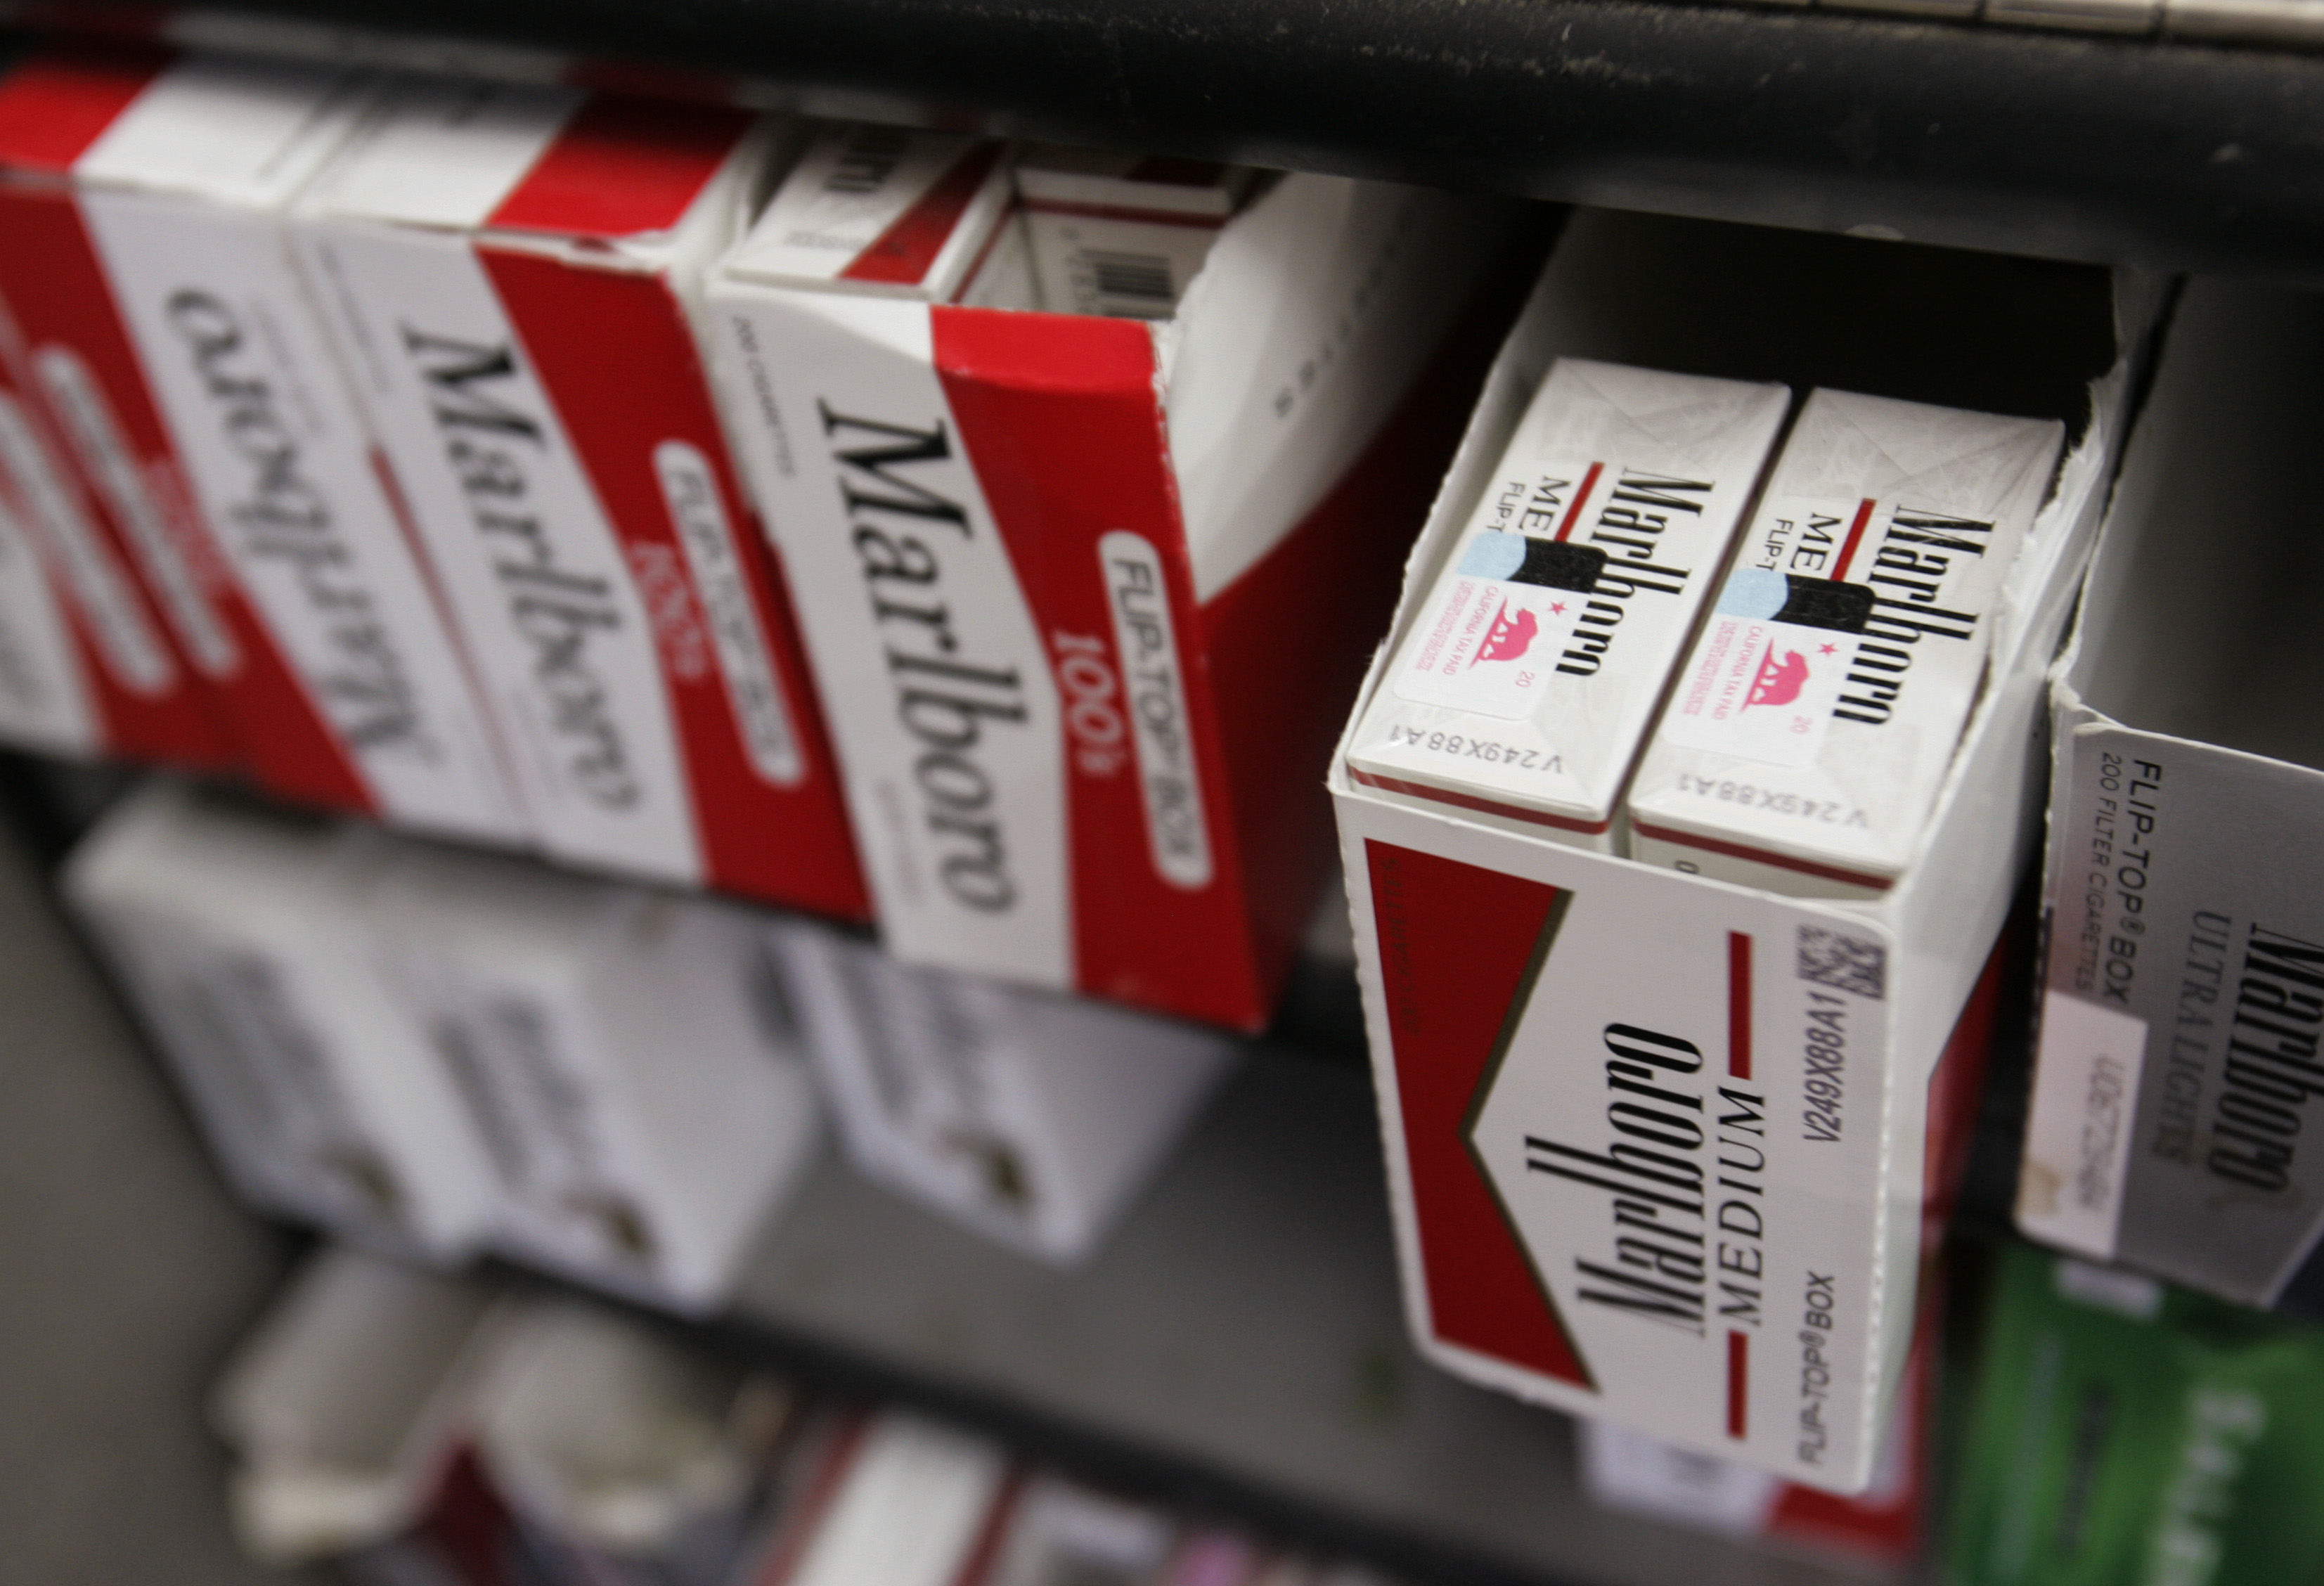 Tobaksbolaget Philip Morris avslöjades med att ha manipulerat forskningsresultat.